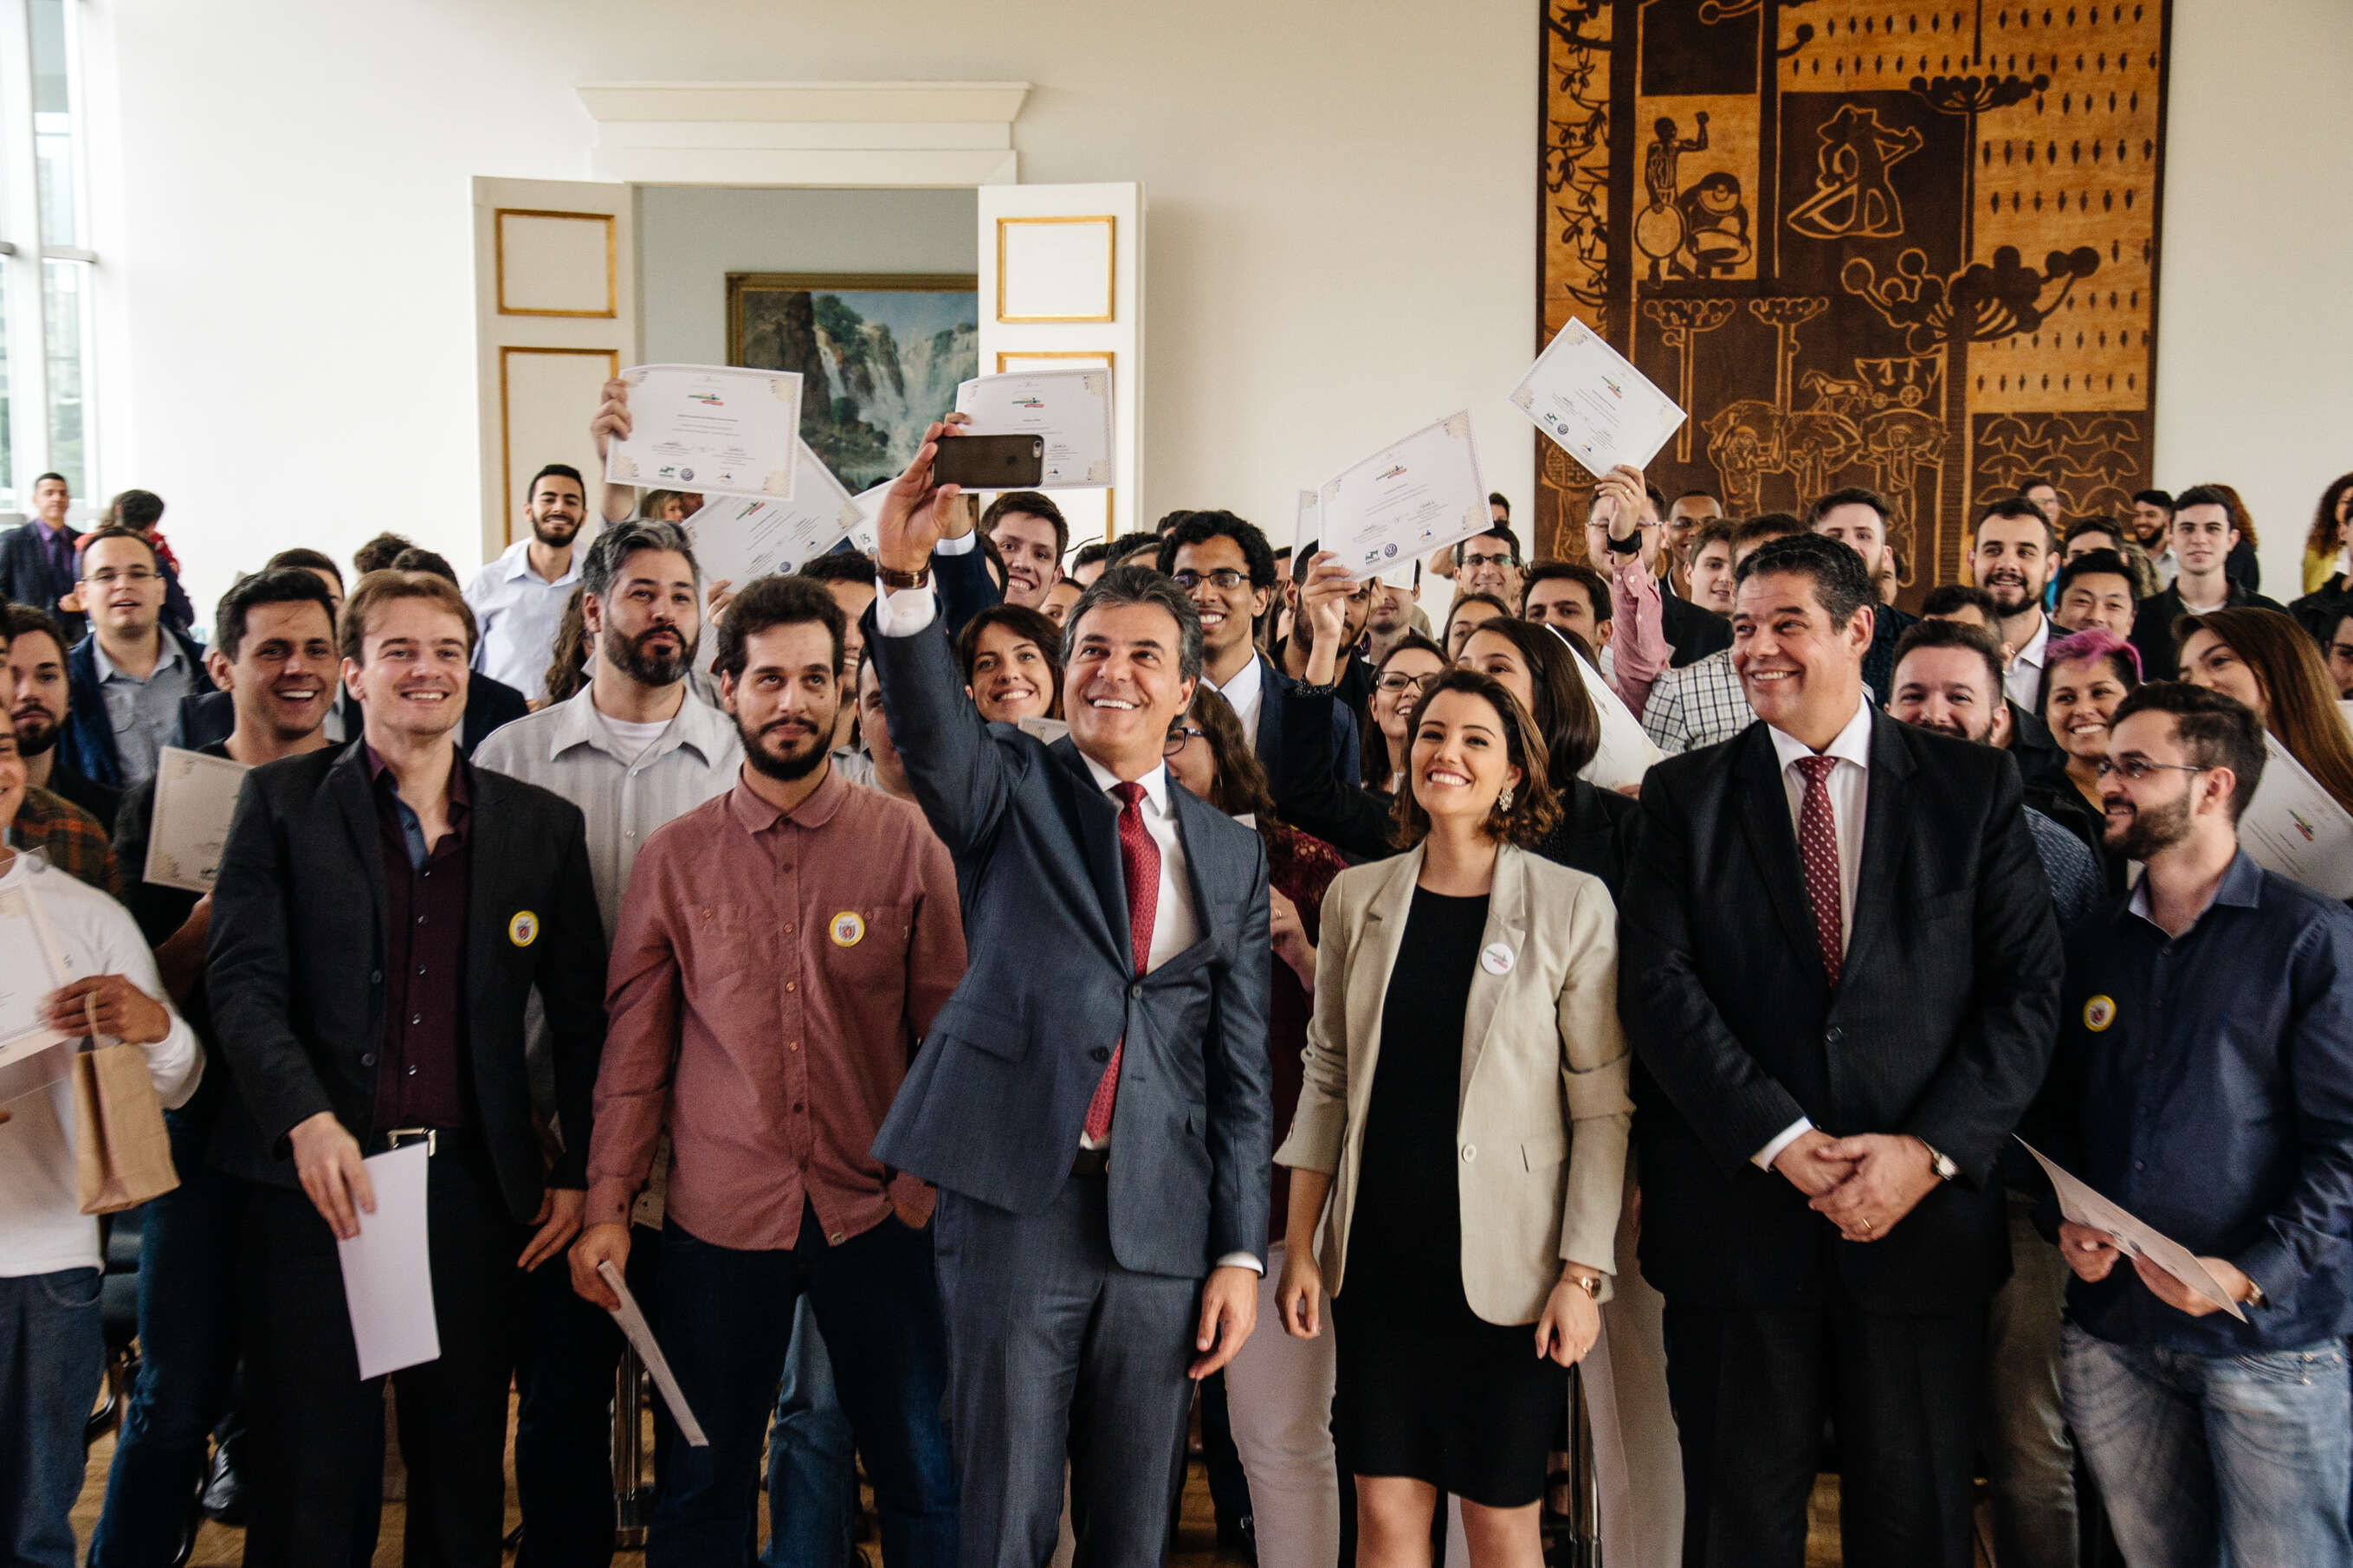 Iniciativas inovadoras e inspiradoras marcam encerramento do Geração Empreendedora – Desafio Paraná: conheça as histórias dos empreendedores destaque!